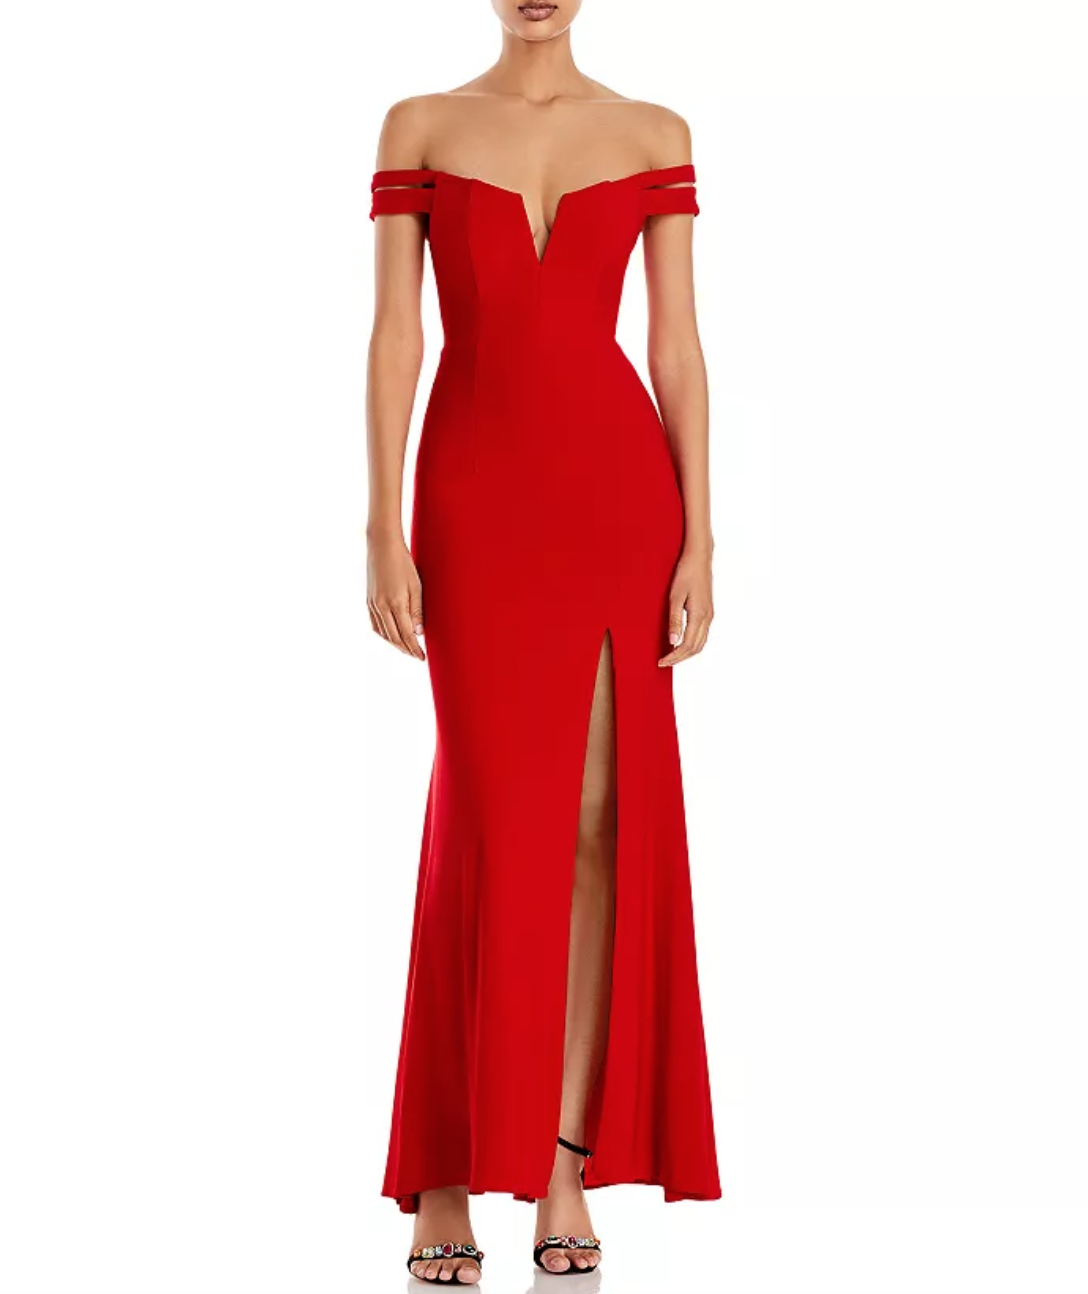 Dorit Kemsley's Red Off The Shoulder Gown